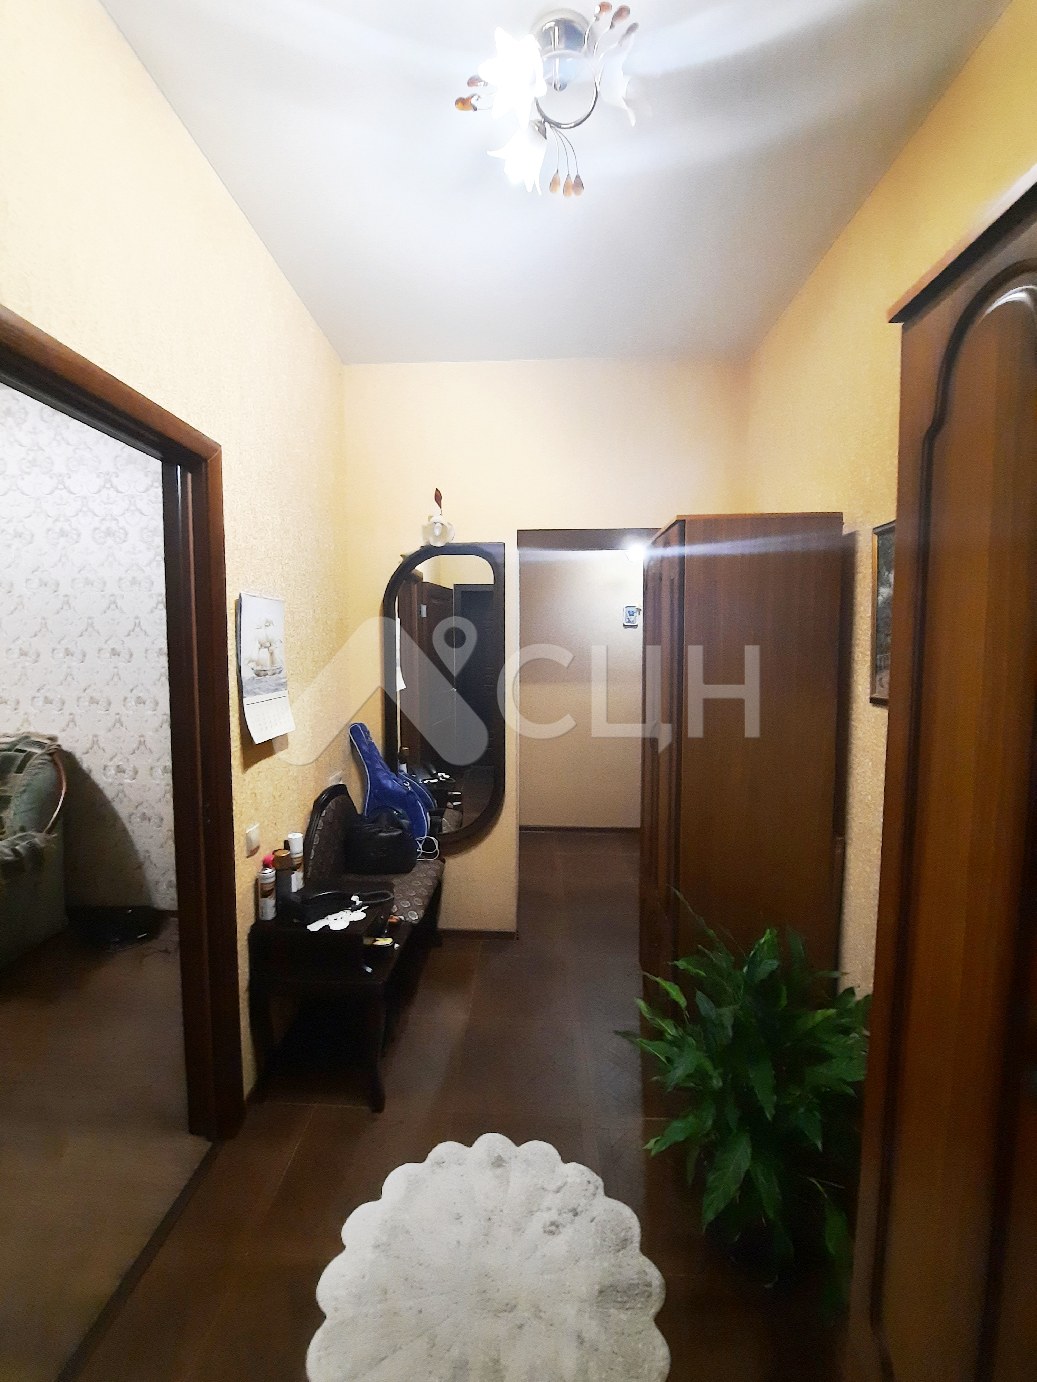 купить квартиру в сарове
: Г. Саров, улица Дзержинского, 7, 2-комн квартира, этаж 1 из 3, продажа.